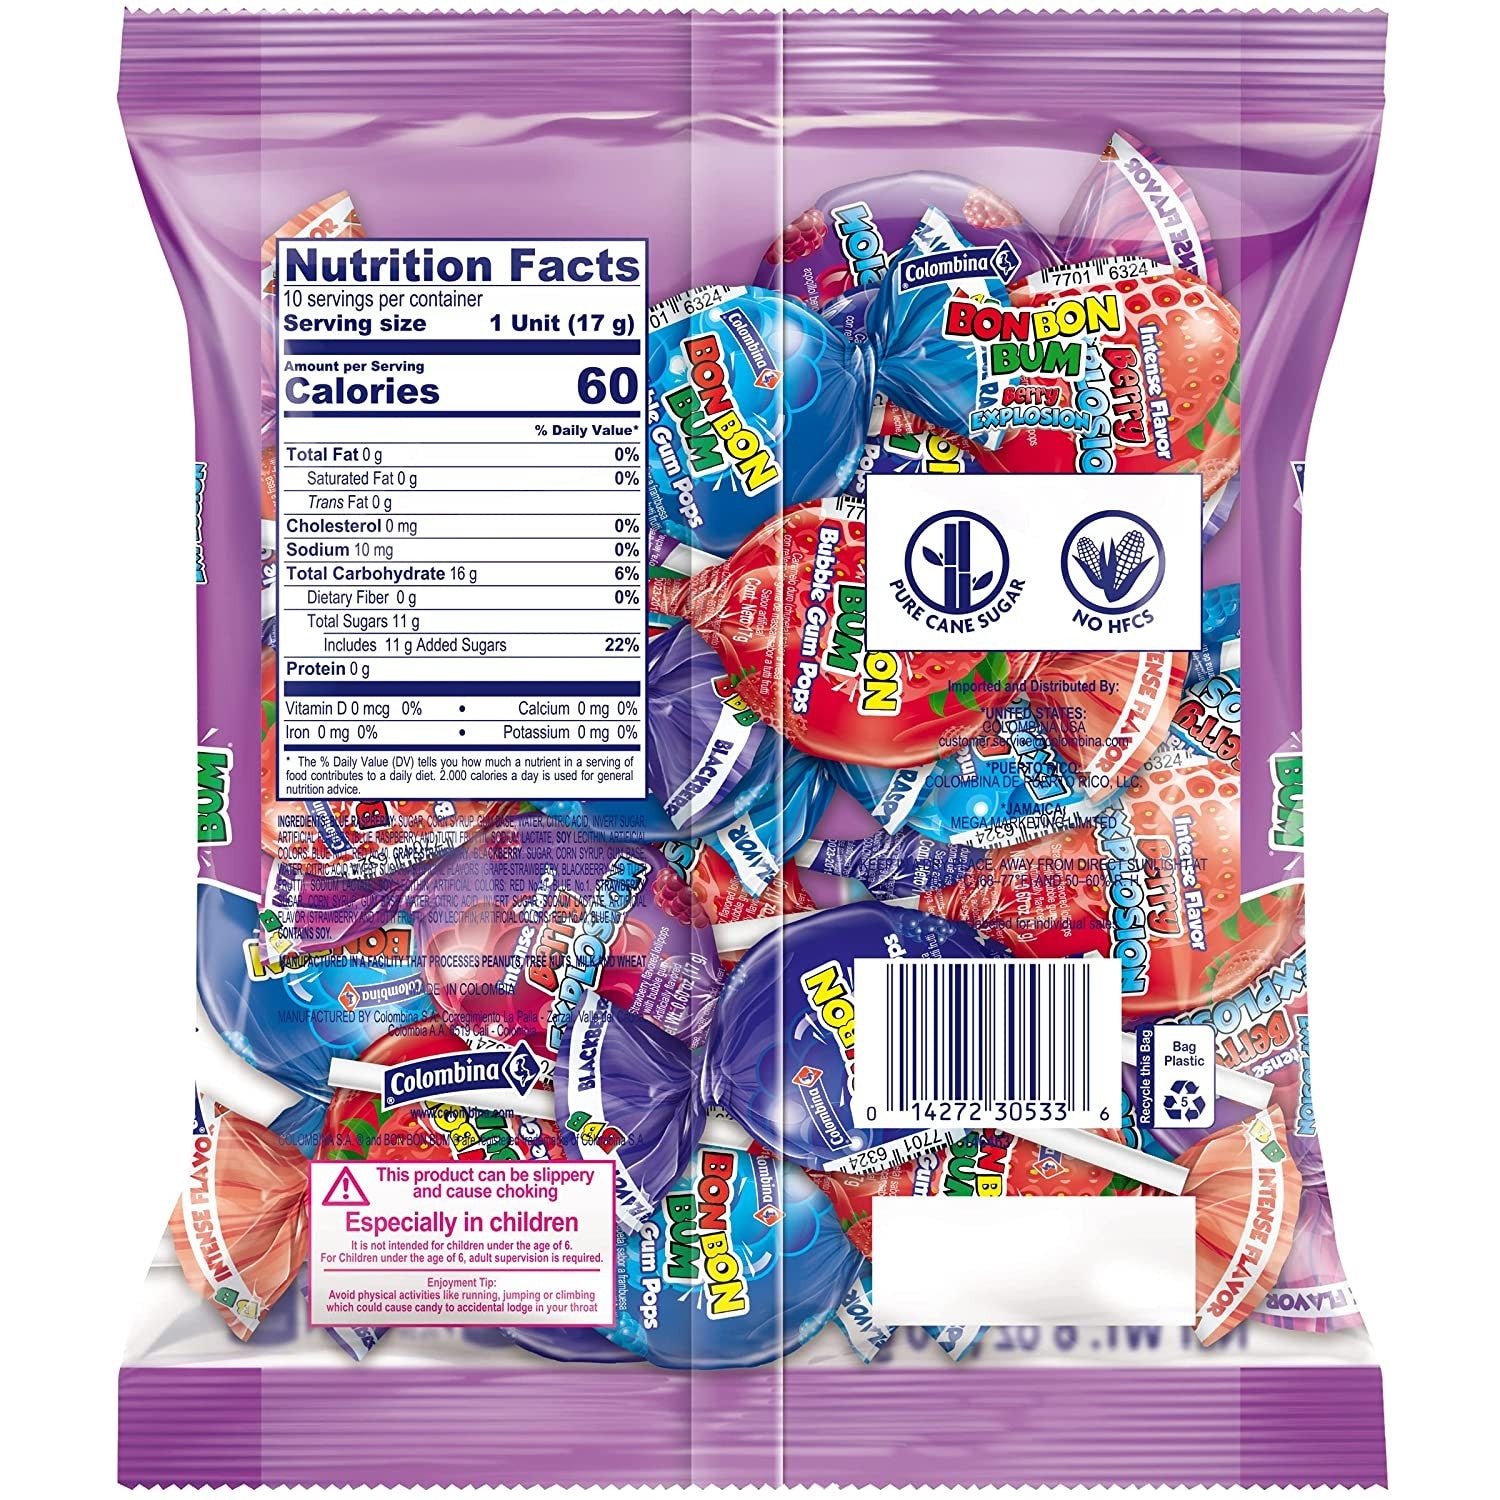 Boule magique original - Bonbons /Bonbons chewing-gum - la-reserve-de- bonbons